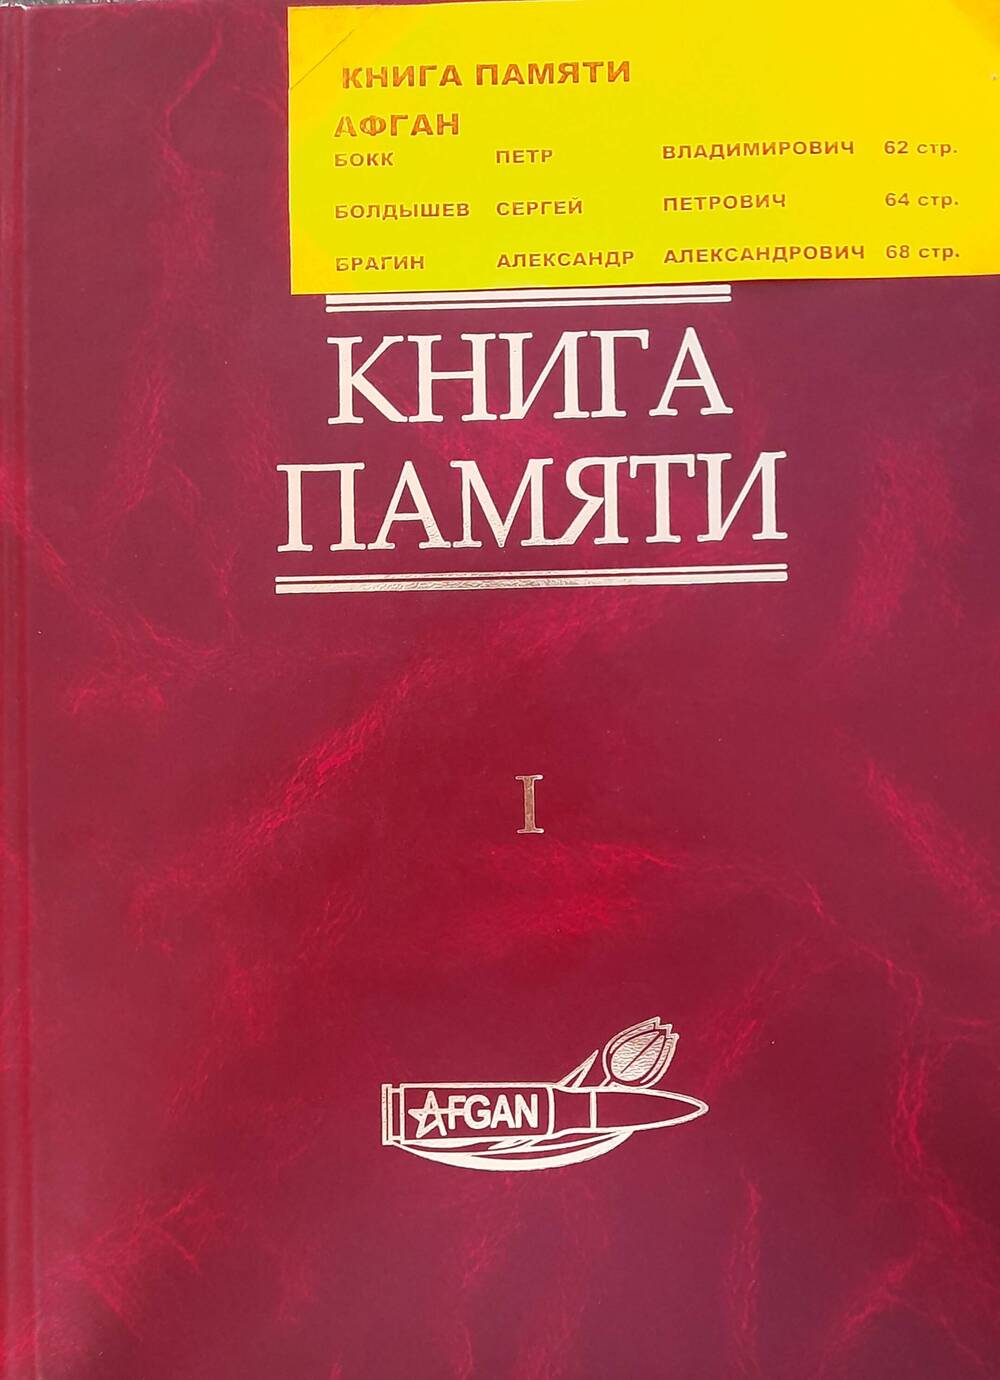 Книга  памяти в двух томах (Алтай) том первый. Афган